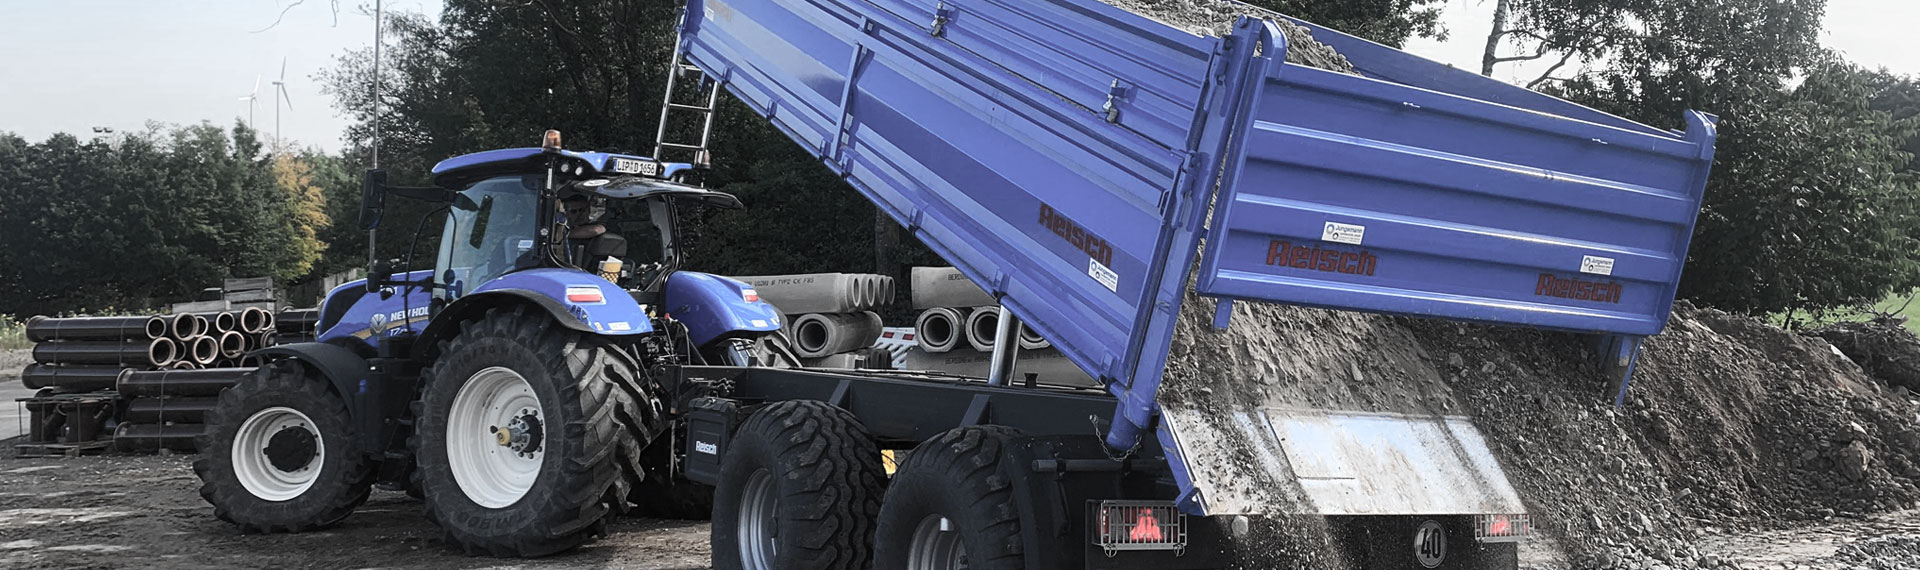 Kivikuormaa kaadetaan sinisestä kippiautosta, jonka lava on rakennettu Hardox®-teräksestä.